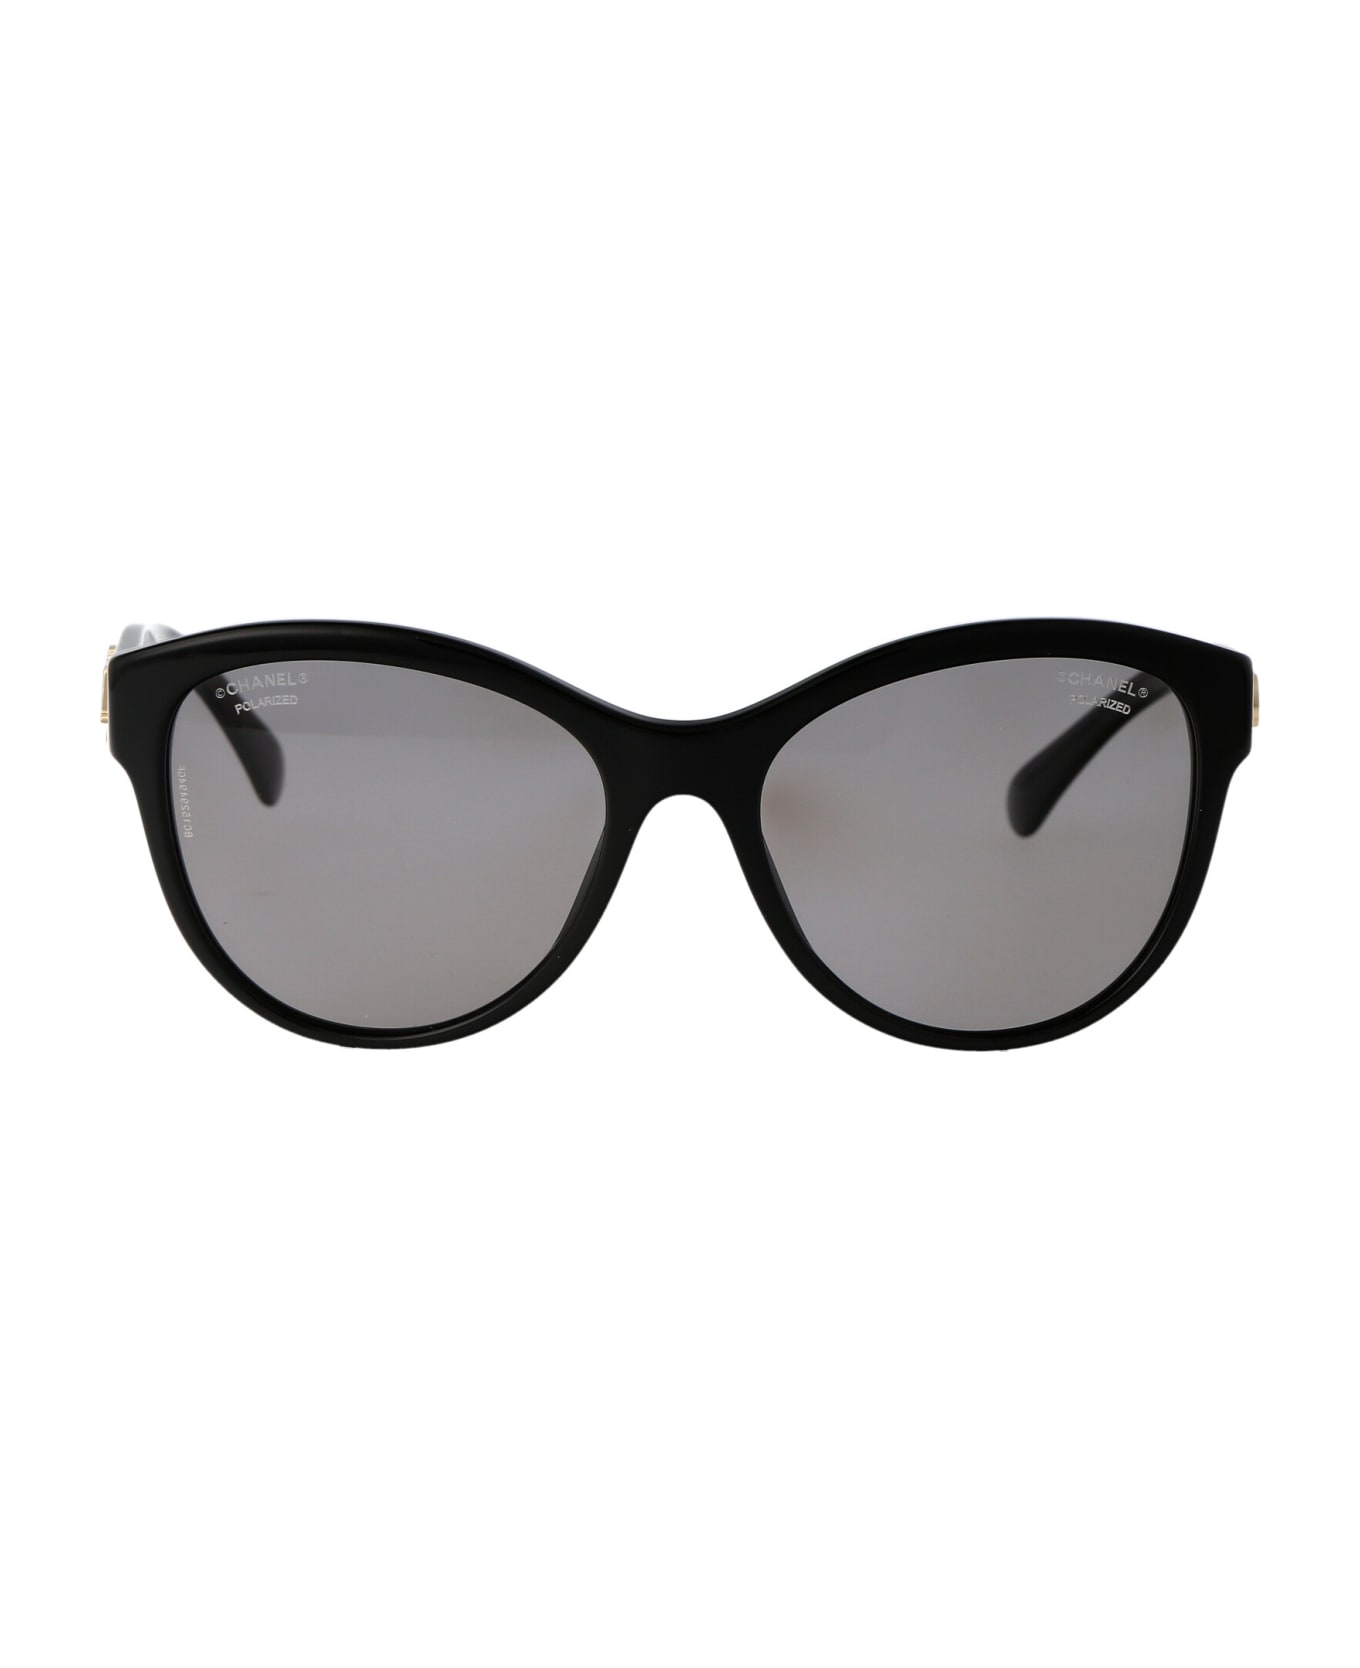 Chanel 0ch5458 Sunglasses - C622T8 BLACK サングラス